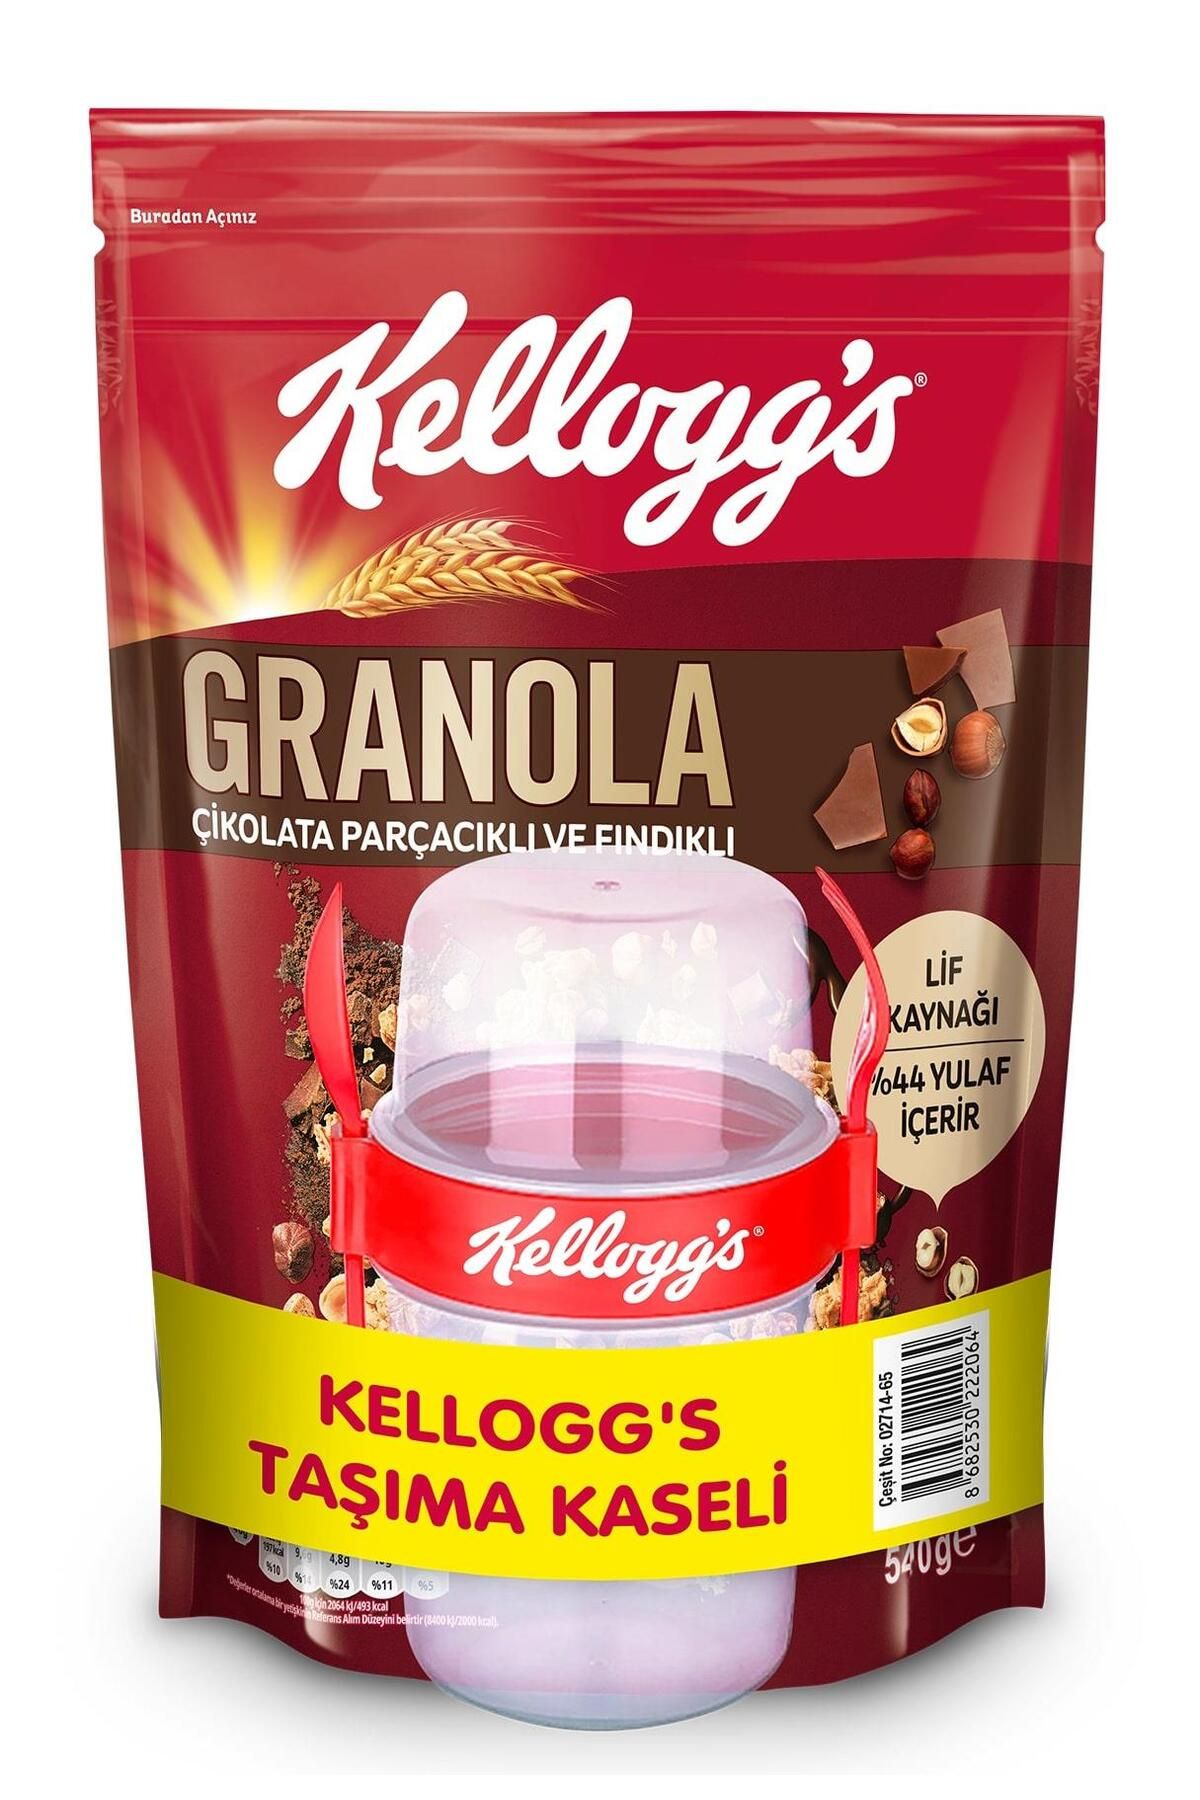 Kellogg's Granola Kapsülü Hediyeli Çikolata Parçacıklı Ve Fındıklı 540 Gram,avantajlı Boy!